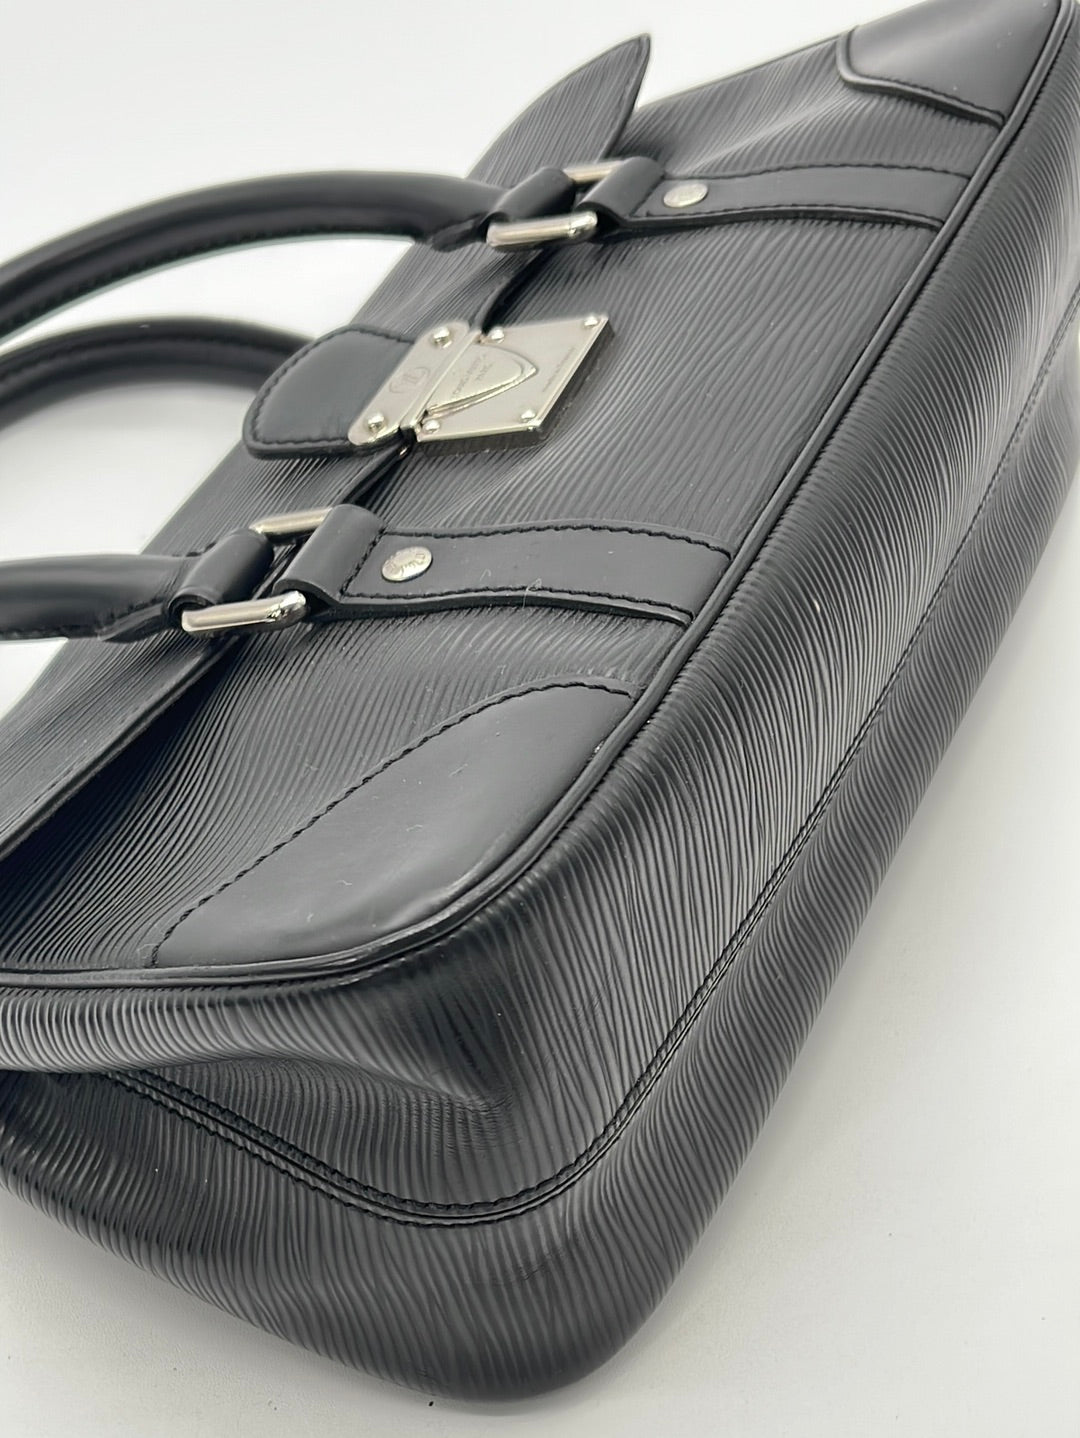 Louis Vuitton Blue Epi Leather Sign It Bracelet – The Don's Luxury Goods